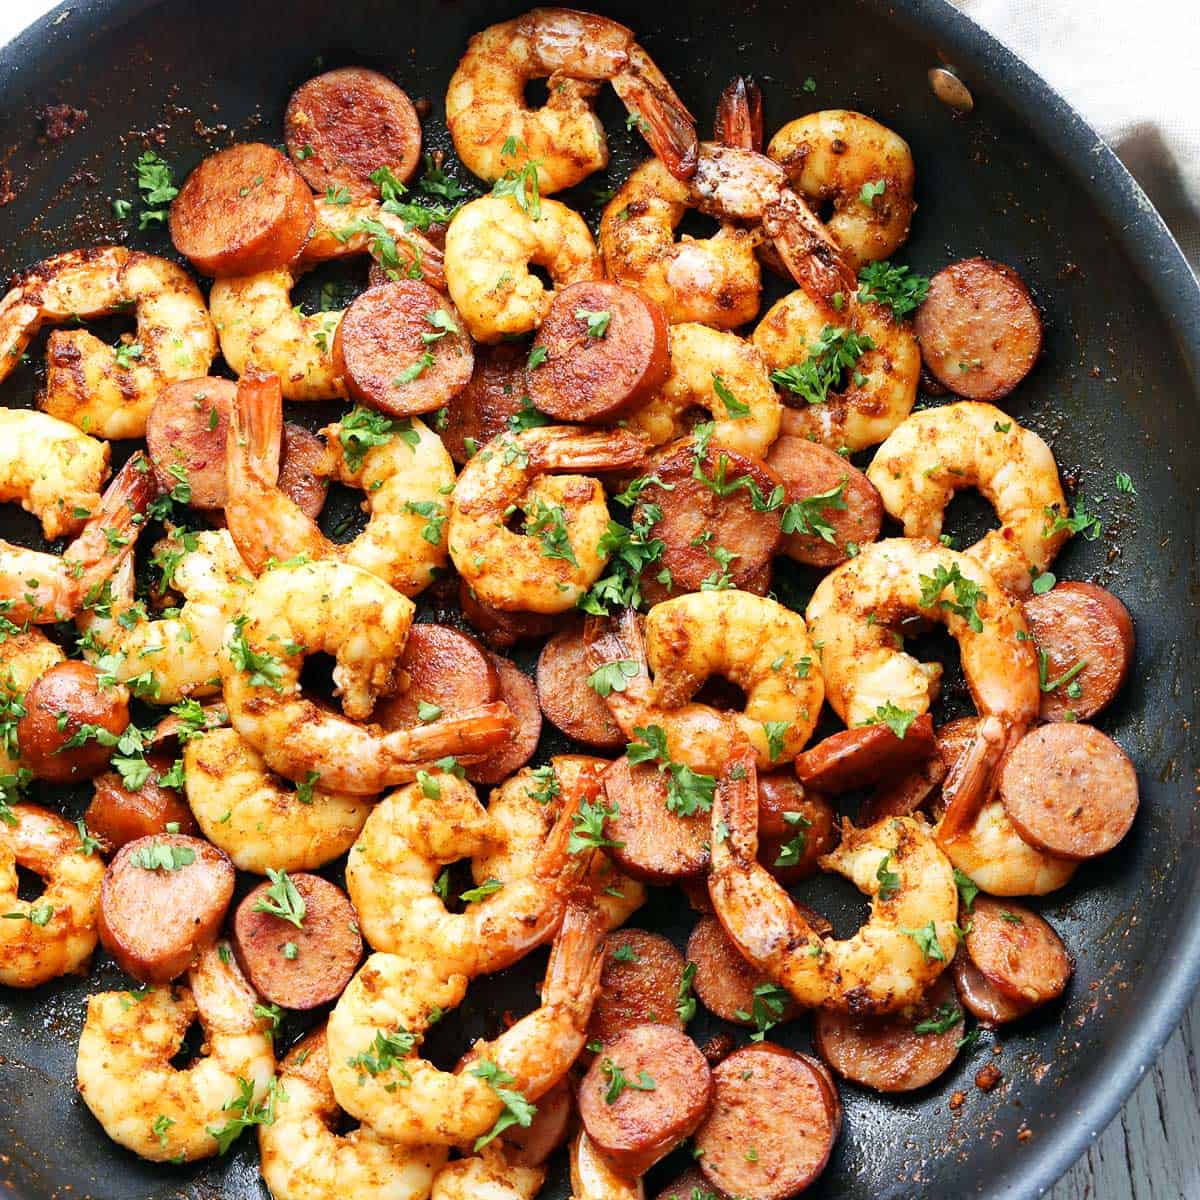 https://healthyrecipesblogs.com/wp-content/uploads/2016/03/shrimp-and-sausage-featured-2021.jpg